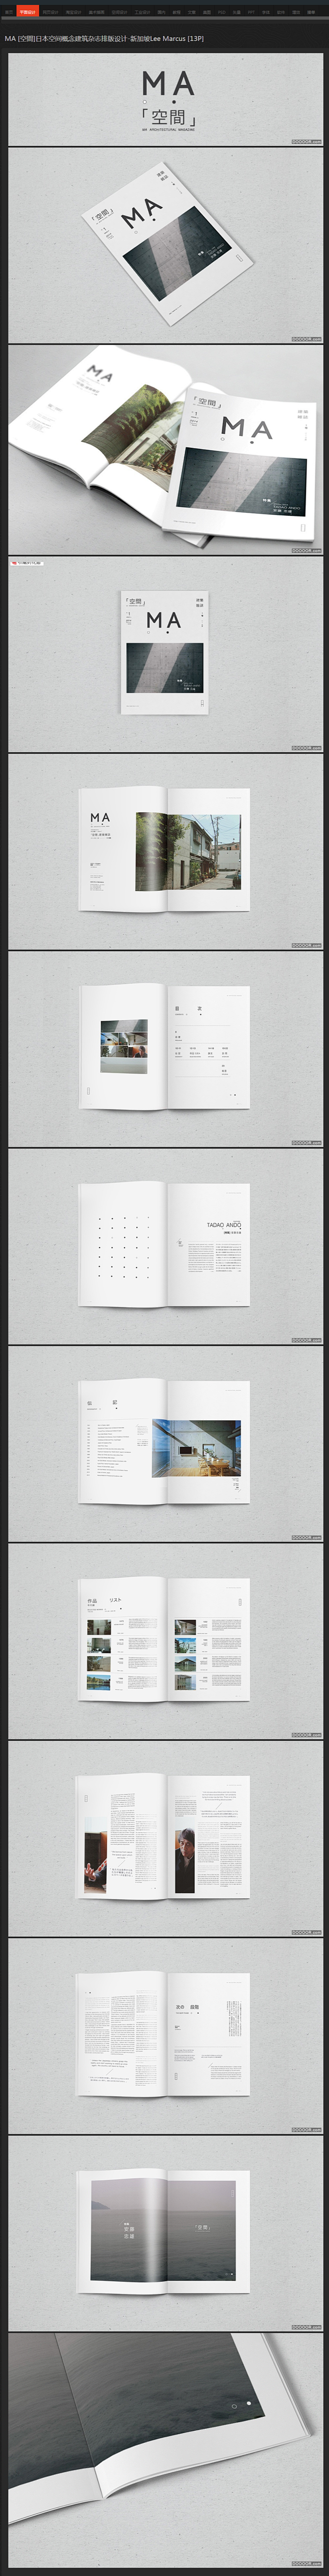 MA [空間]日本空间概念建筑杂志排版设...